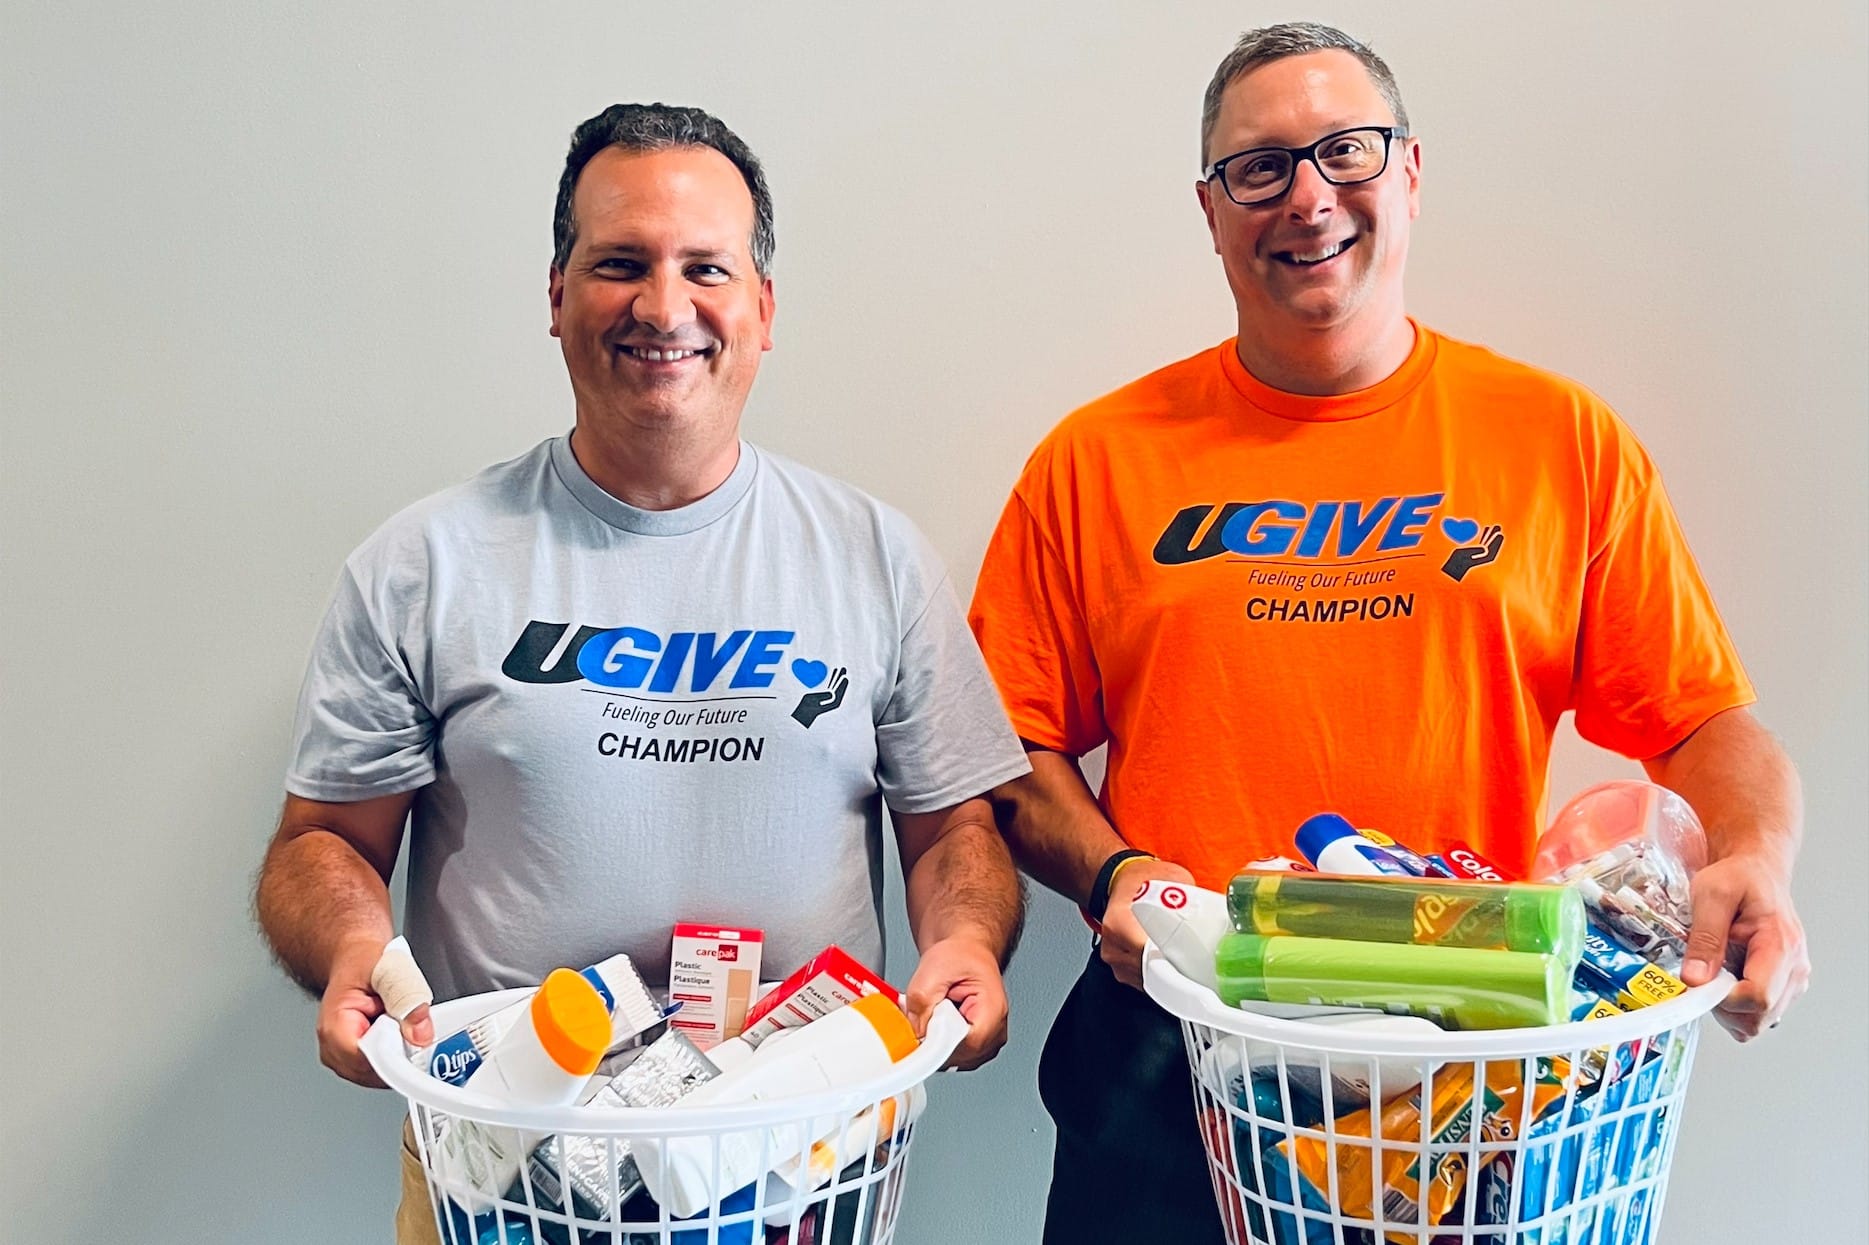 UGI employees wearing UGIVE shirts holding donation baskets of household items